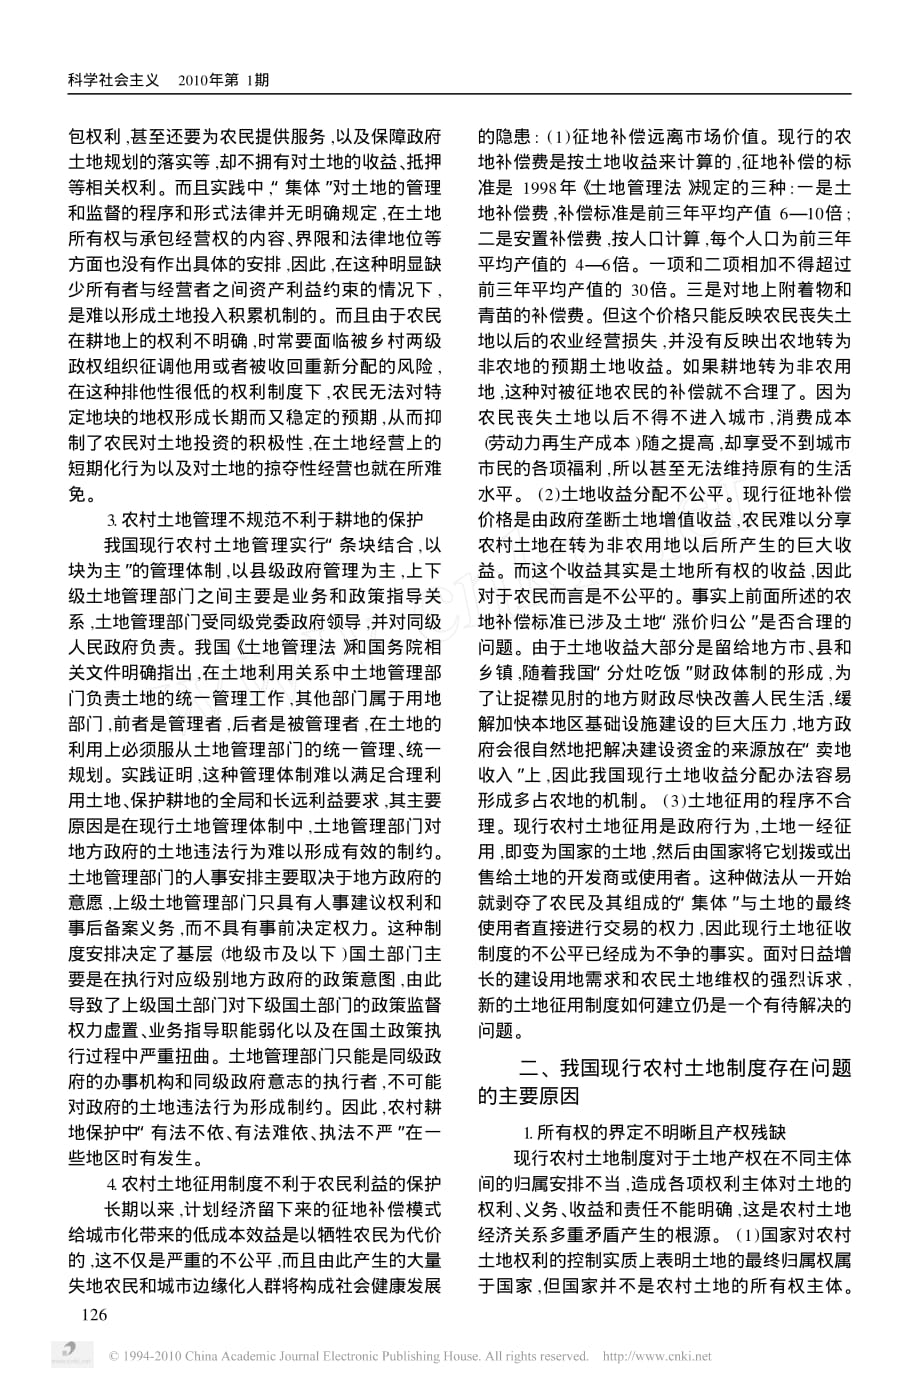 我国现行农村土地管理制度的主要问题及改革思路_黄花_第2页